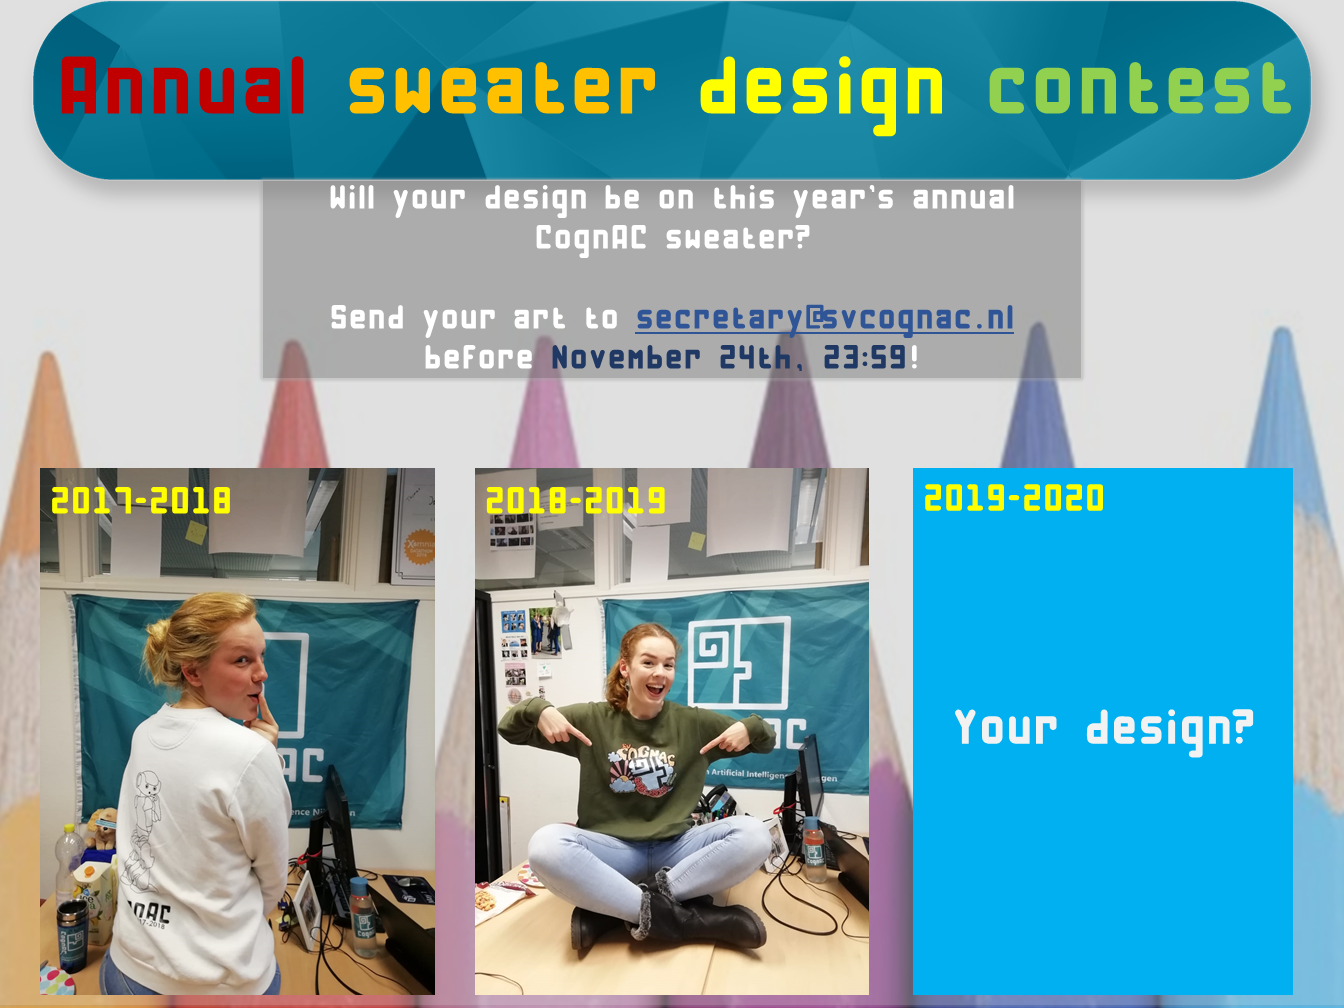 Annual sweater design contest